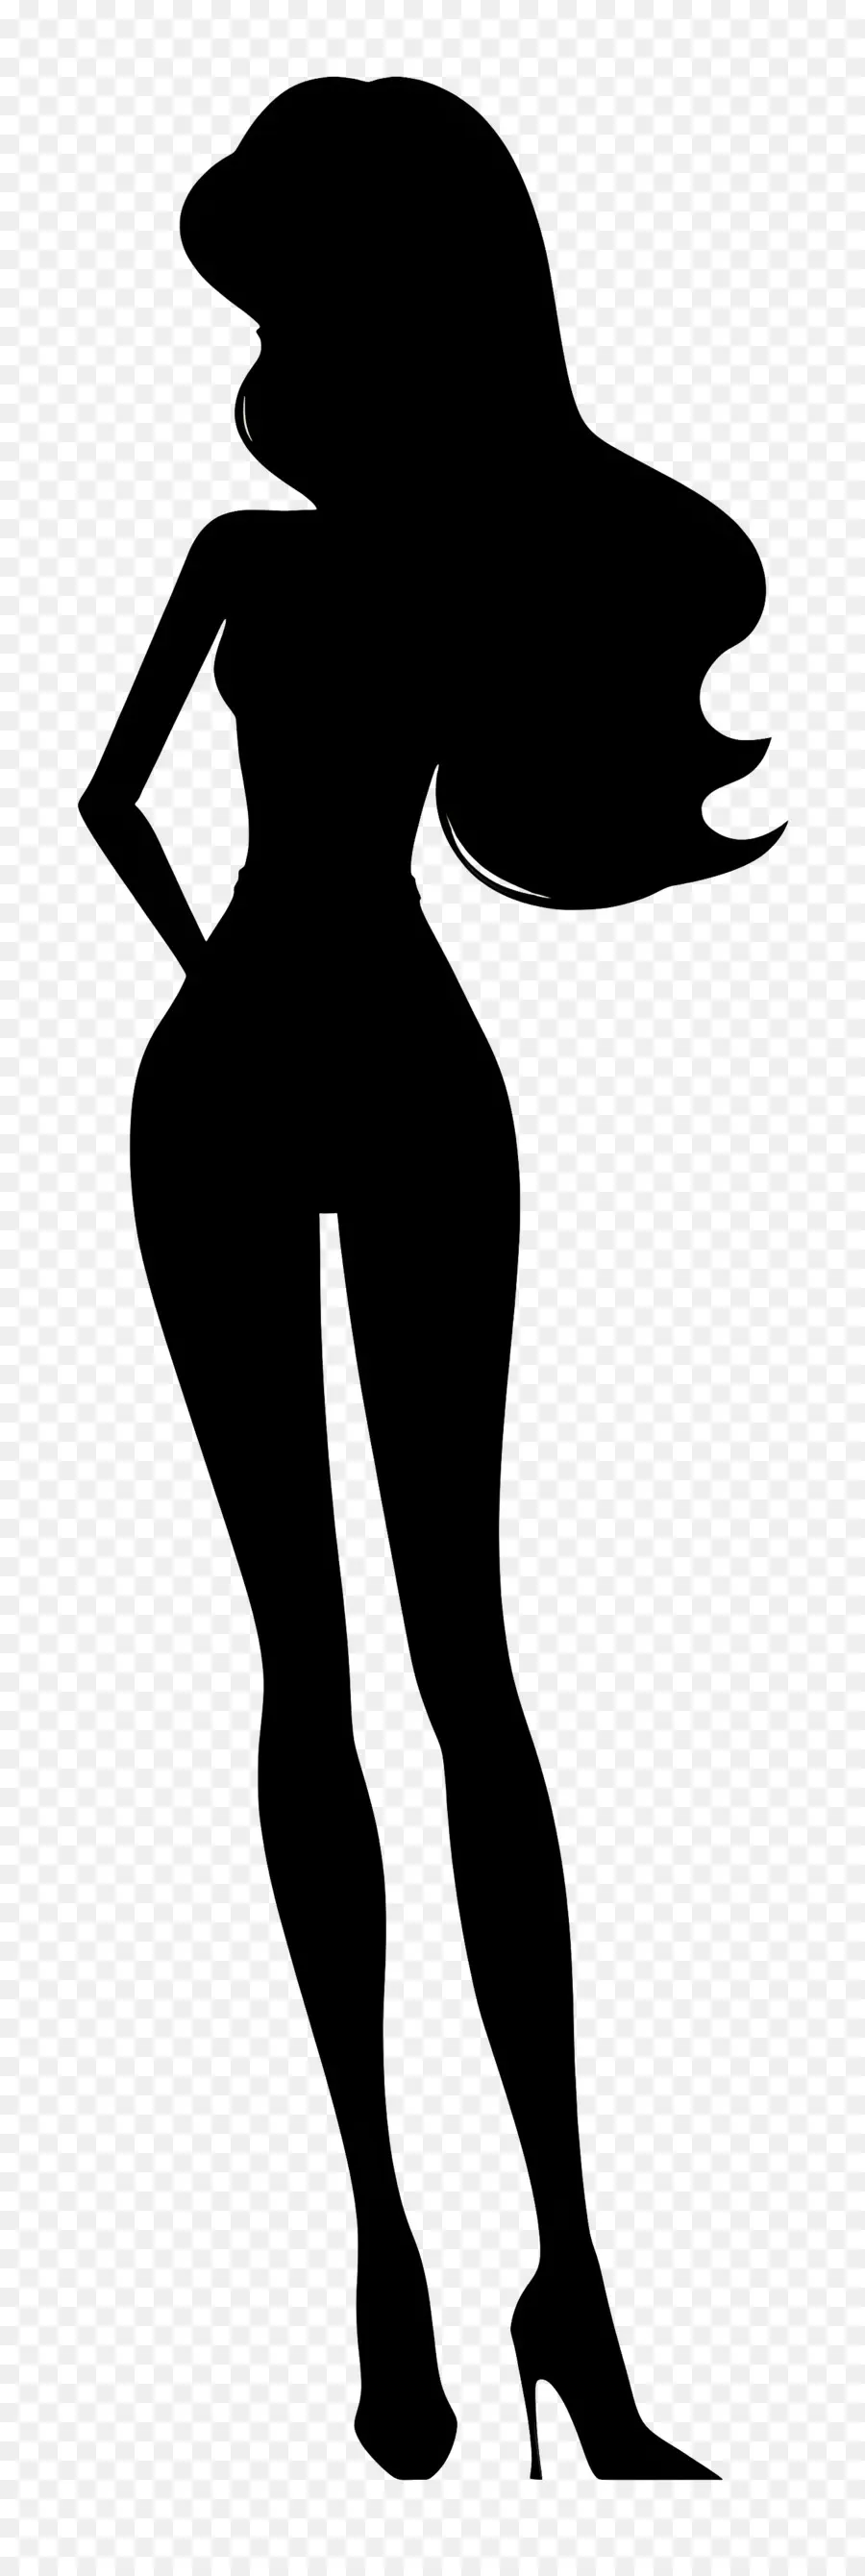 Barbie Silhouette Silhouette donna braccia tese e sottili - Donna alta ed elegante con le braccia tese in posa